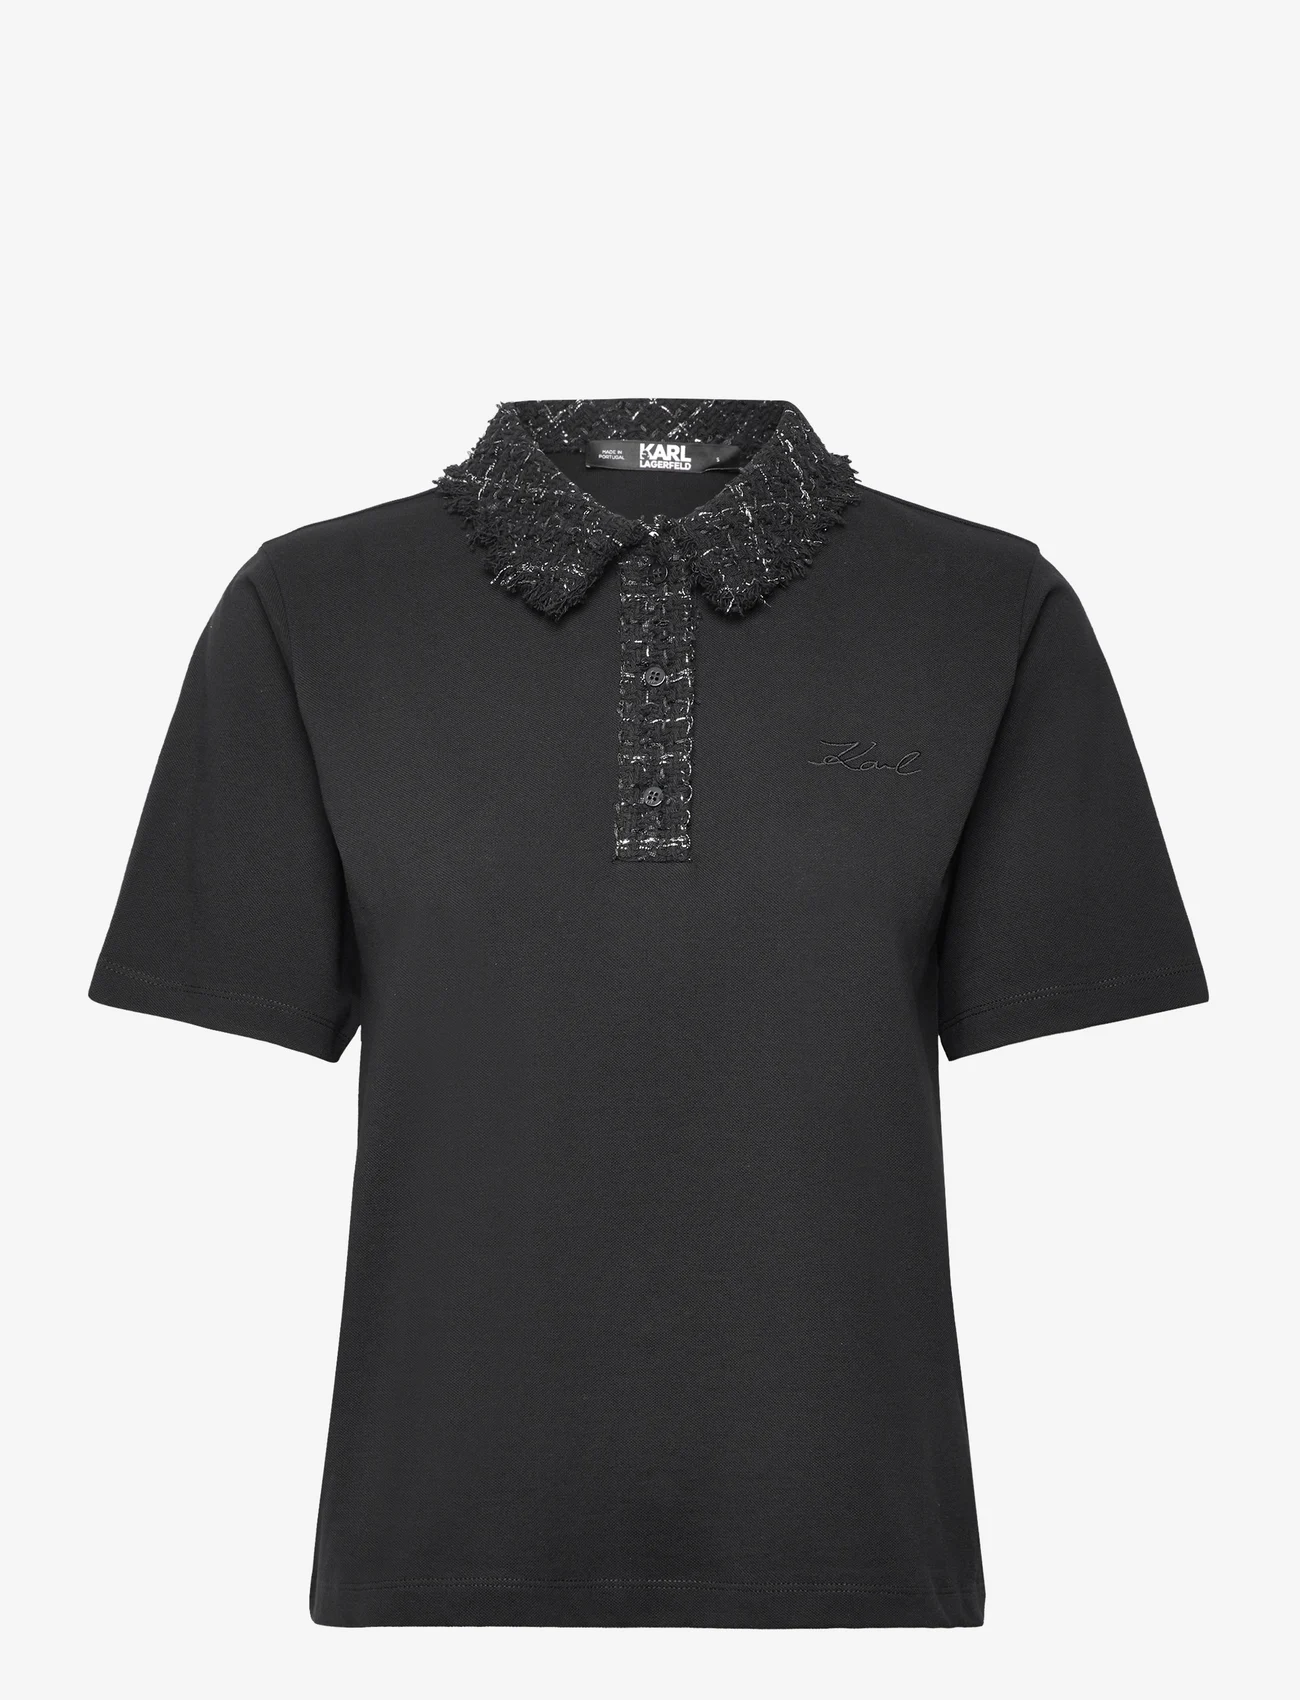 Karl Lagerfeld - boucle polo t-shirt - polo marškinėliai - black - 0